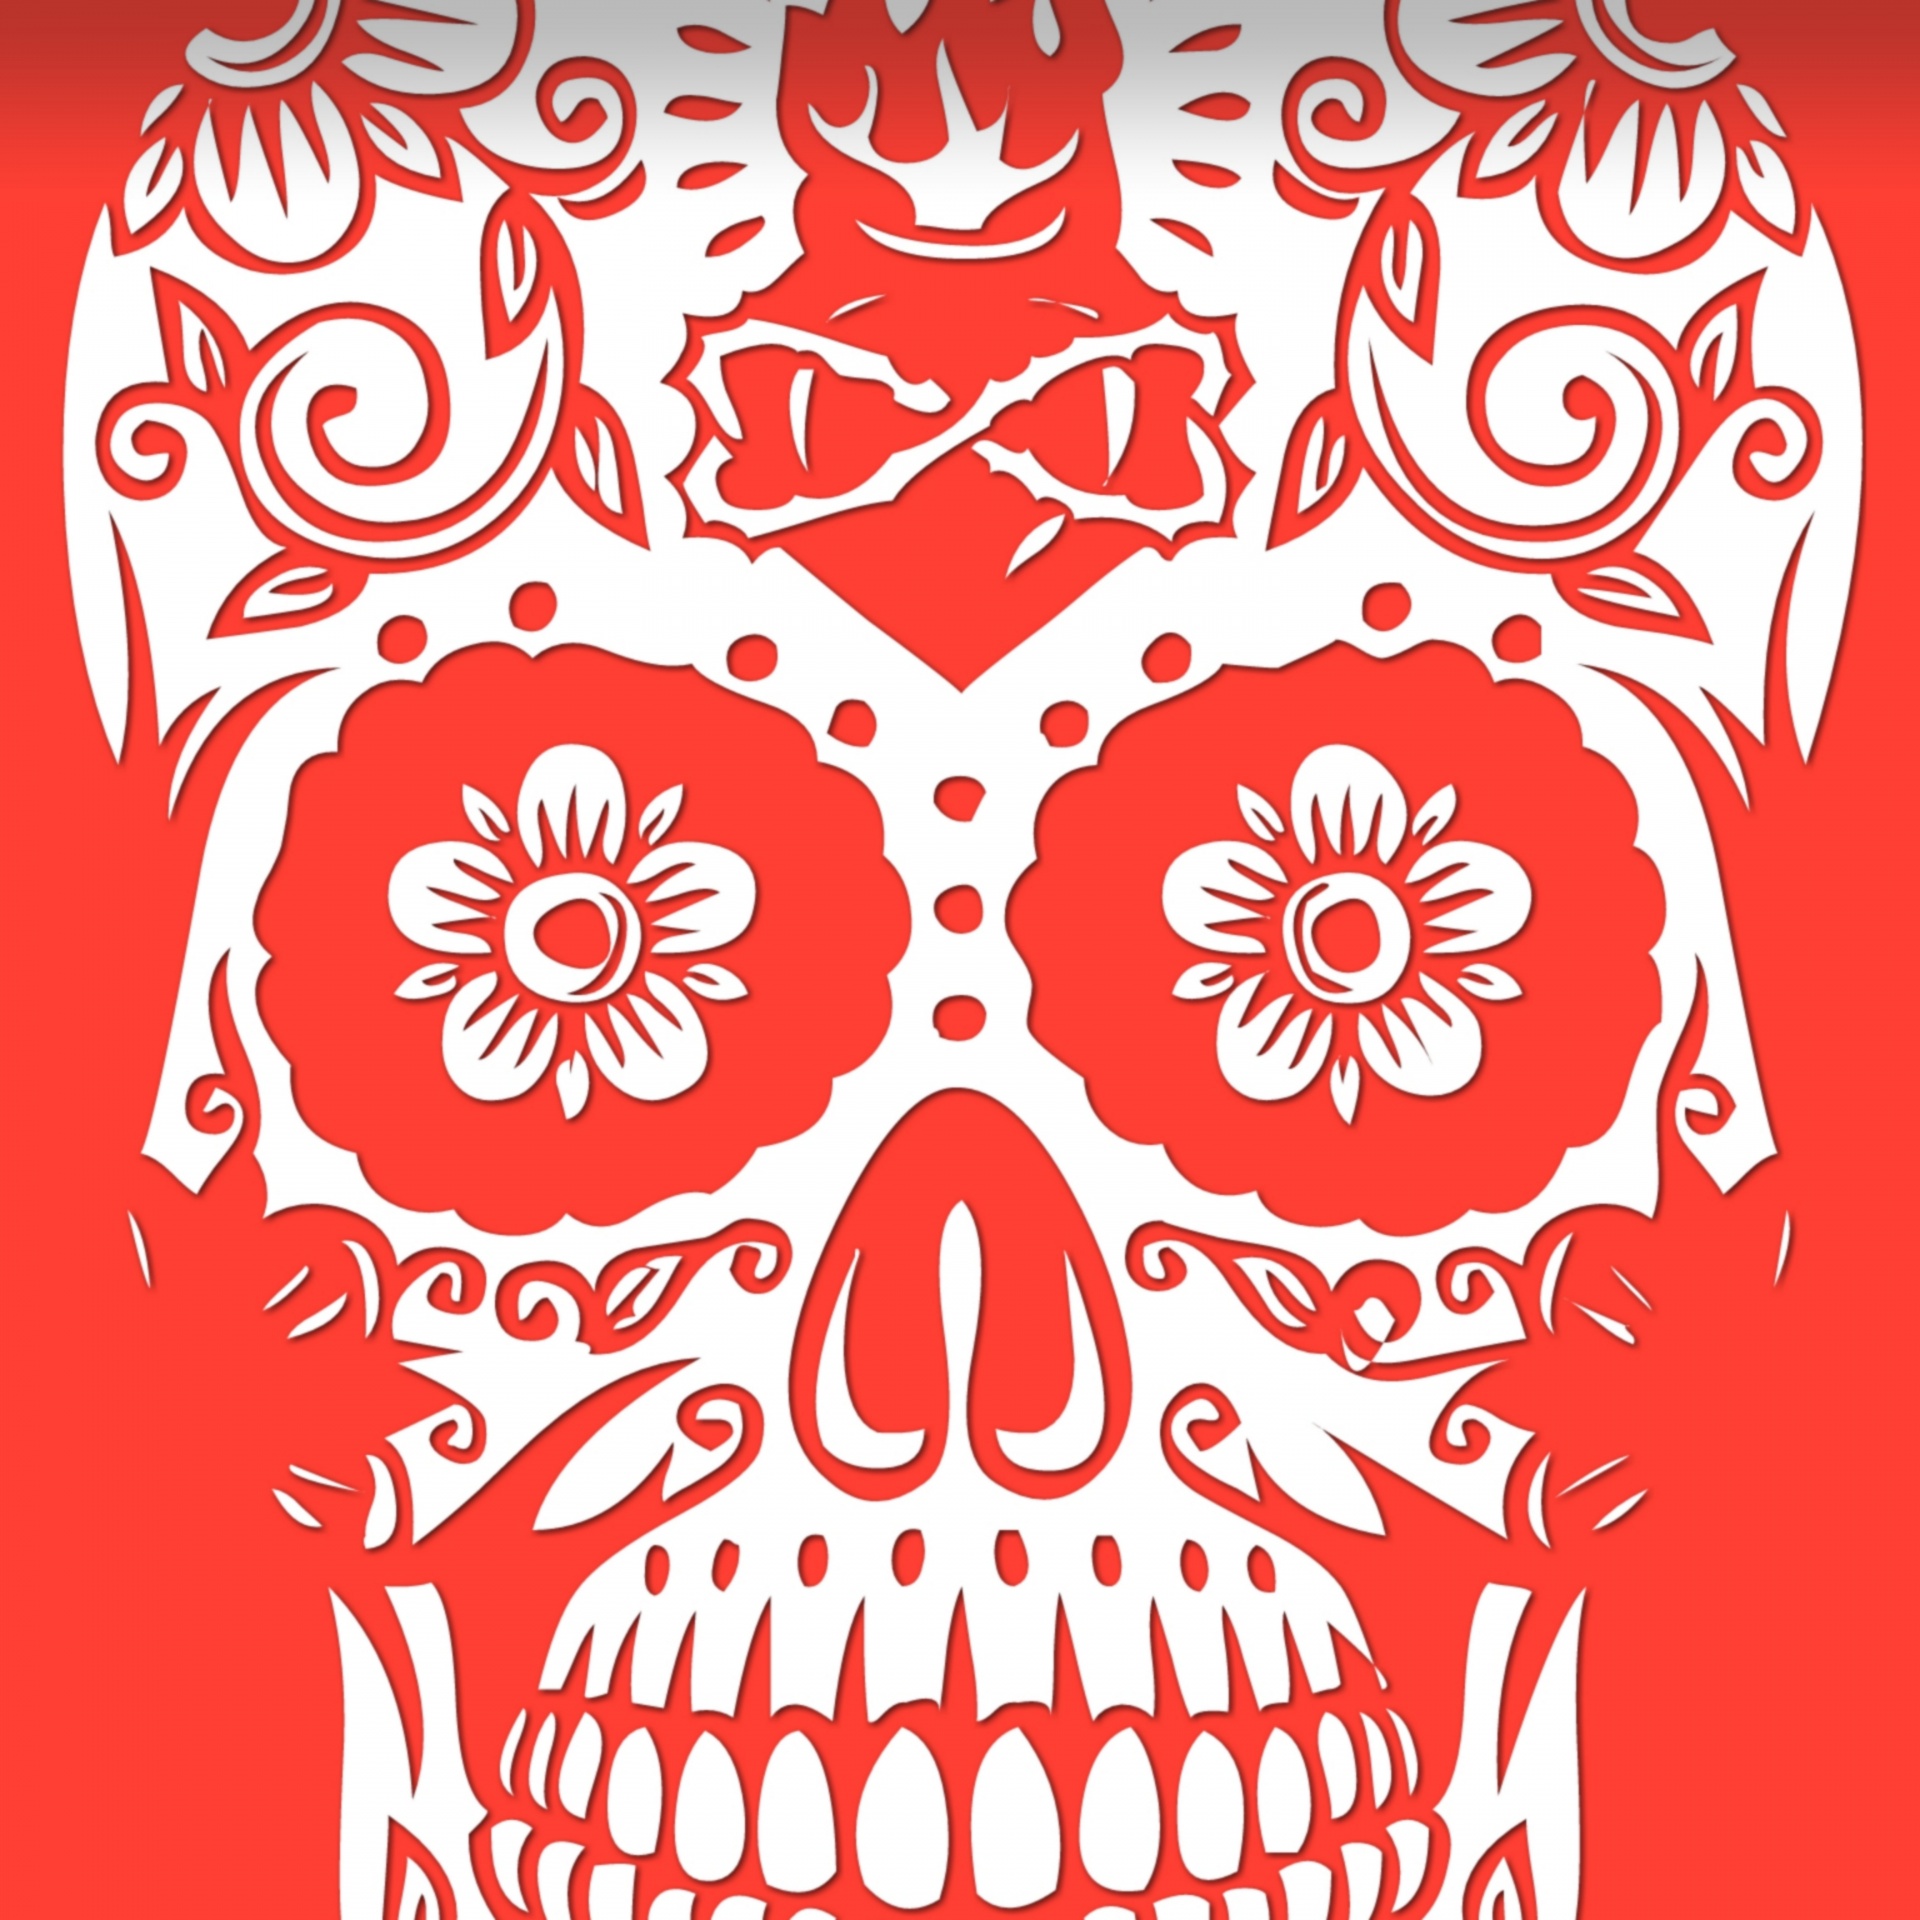 Wallpaper Red Skull Free Photo - Dia De Los Muertos Skull Fire - HD Wallpaper 